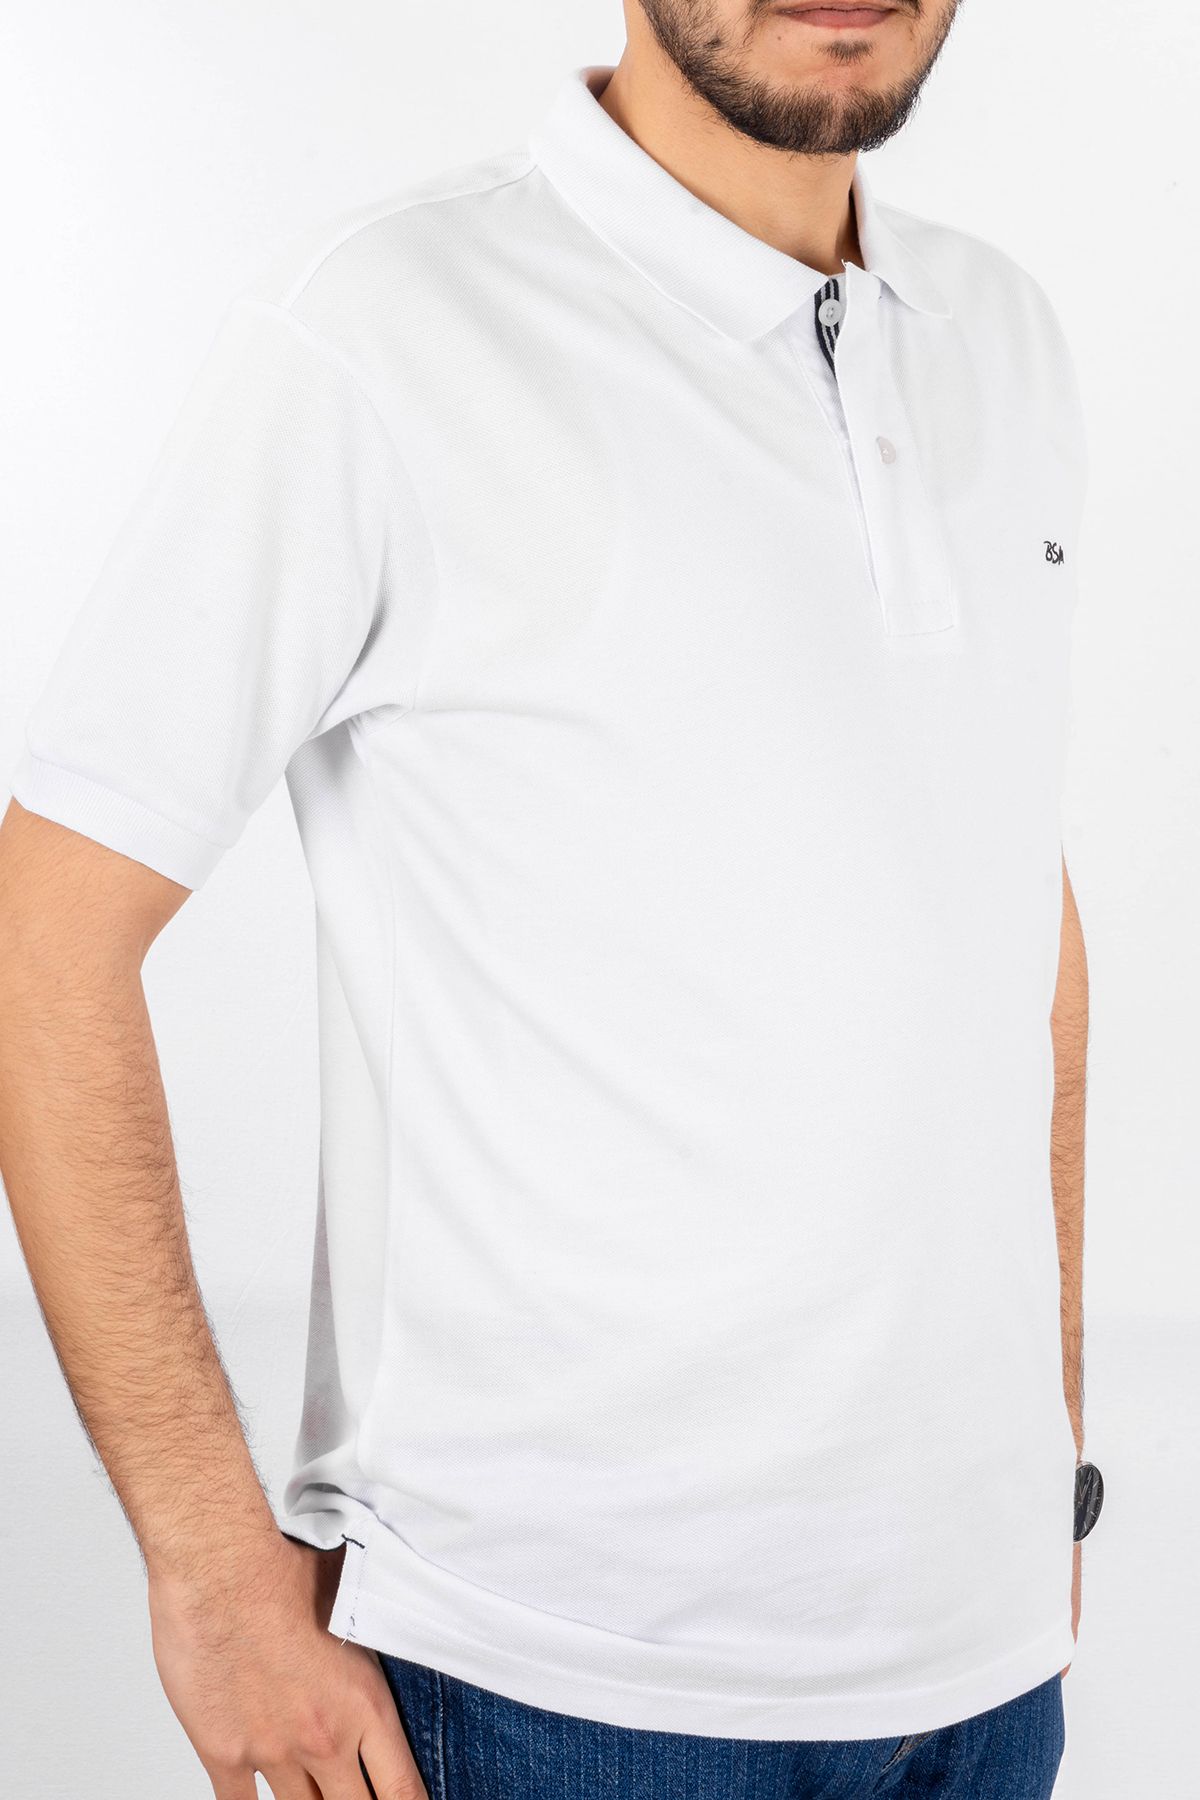 BSM Erkek Yüksek Kalite Kısa Kollu Polo Yaka Beyaz Pike T-Shirt